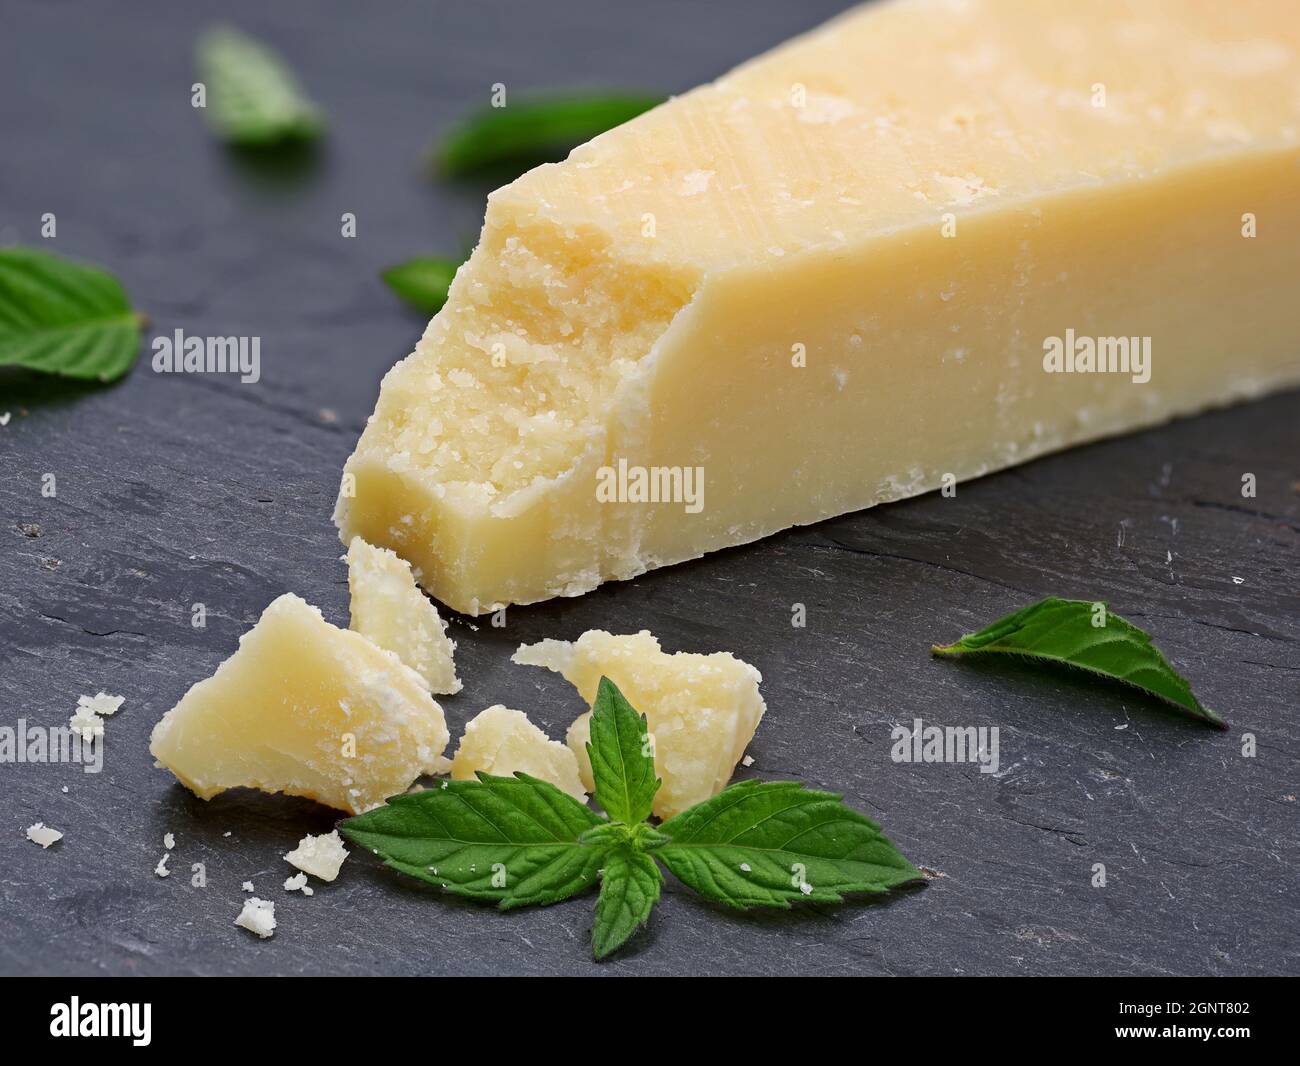 Stücke von köstlichem Parmesan-Käse auf dunklem Schieferteller mit grünen Minzblättern, Makroaufnahme von Parmigiano reggiano Stockfoto